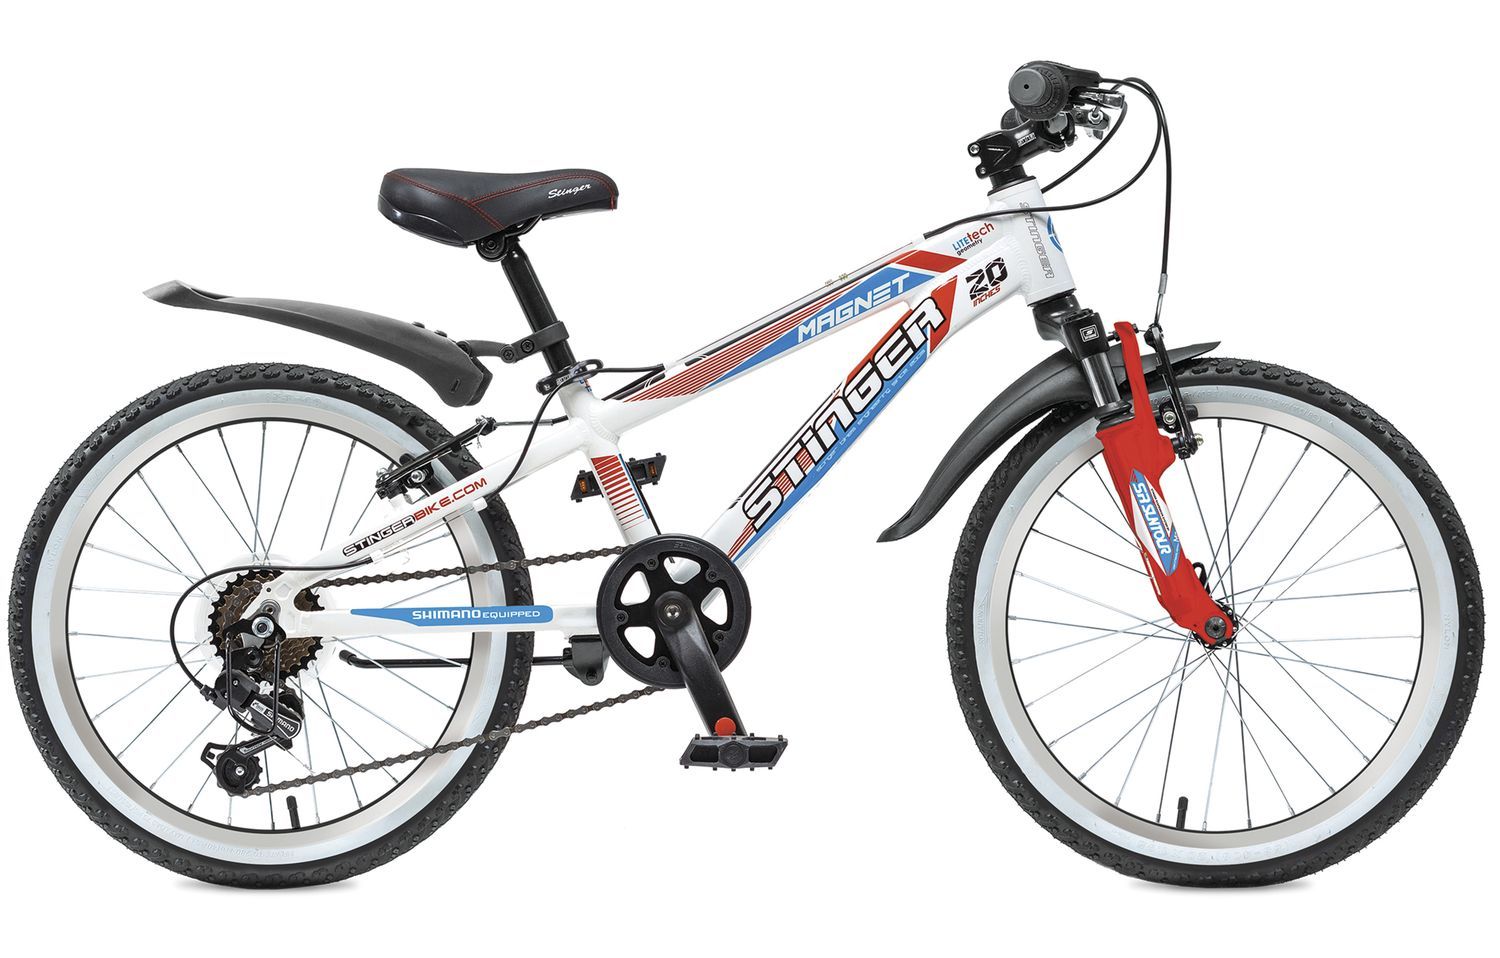  Отзывы о Детском велосипеде Stinger Magnet 20 2015